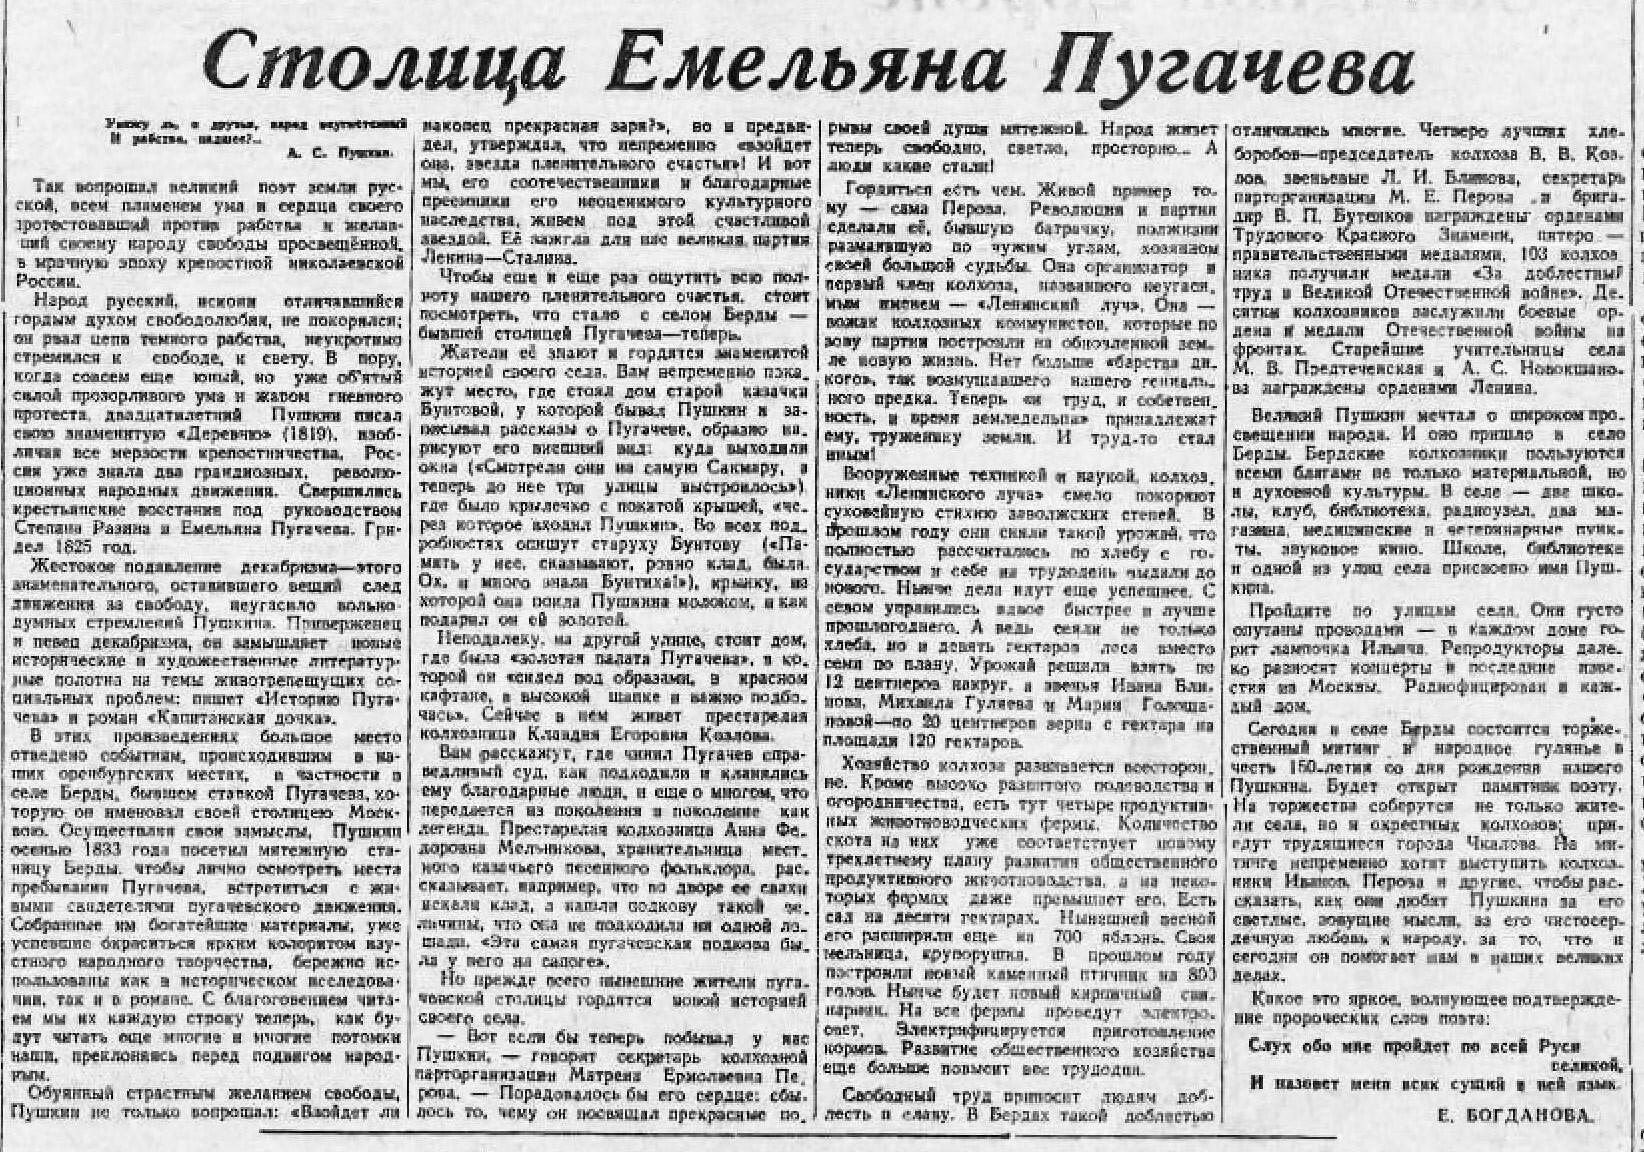 Столица с газета саранск читать